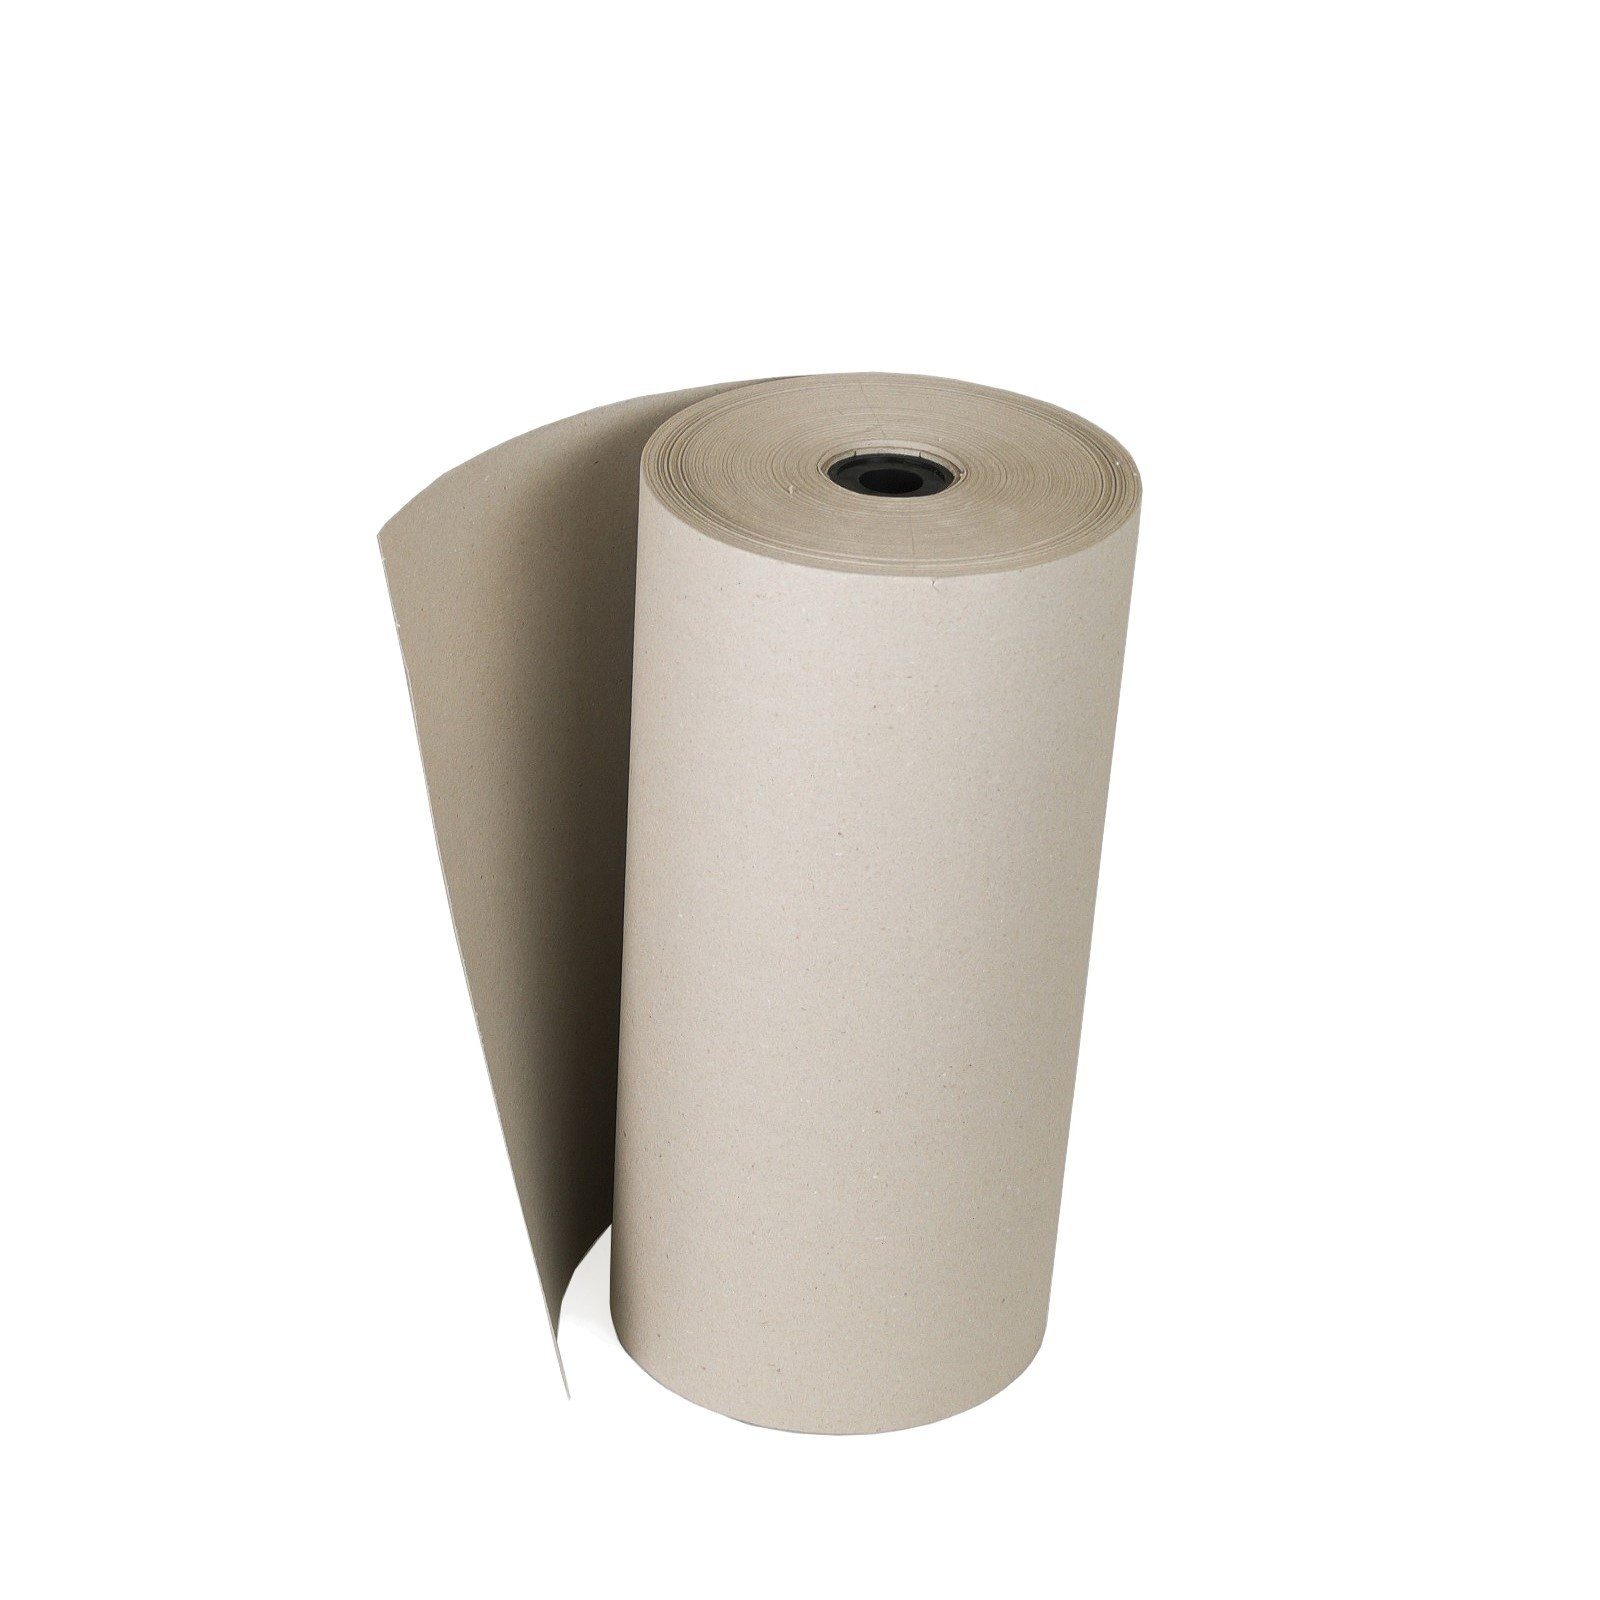 100g/m² Verpackungen Rollen-Schrenzpapier 200m Packpapier KK Seidenpapier, Grau Füllmaterial 0,5x